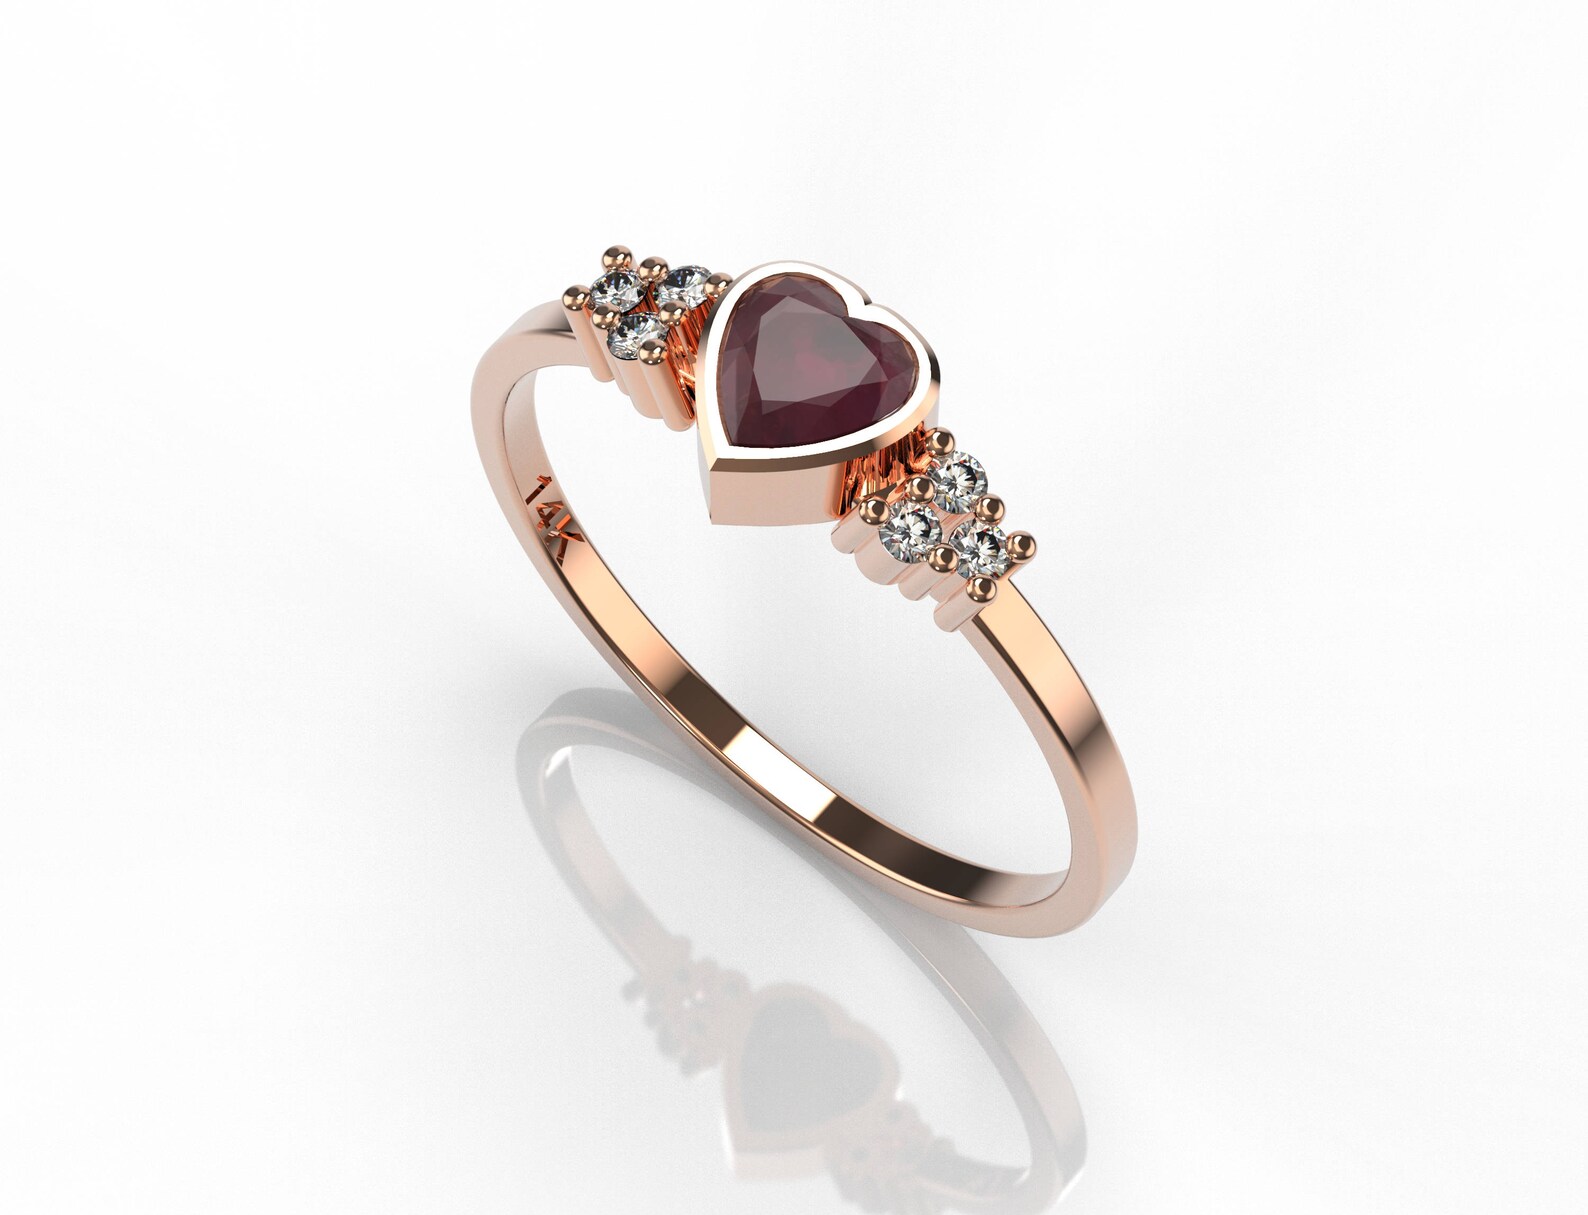 Genuine Ruby Rring Heart Ruby Tiny Diamond Ring Love Gift Idea - Etsy